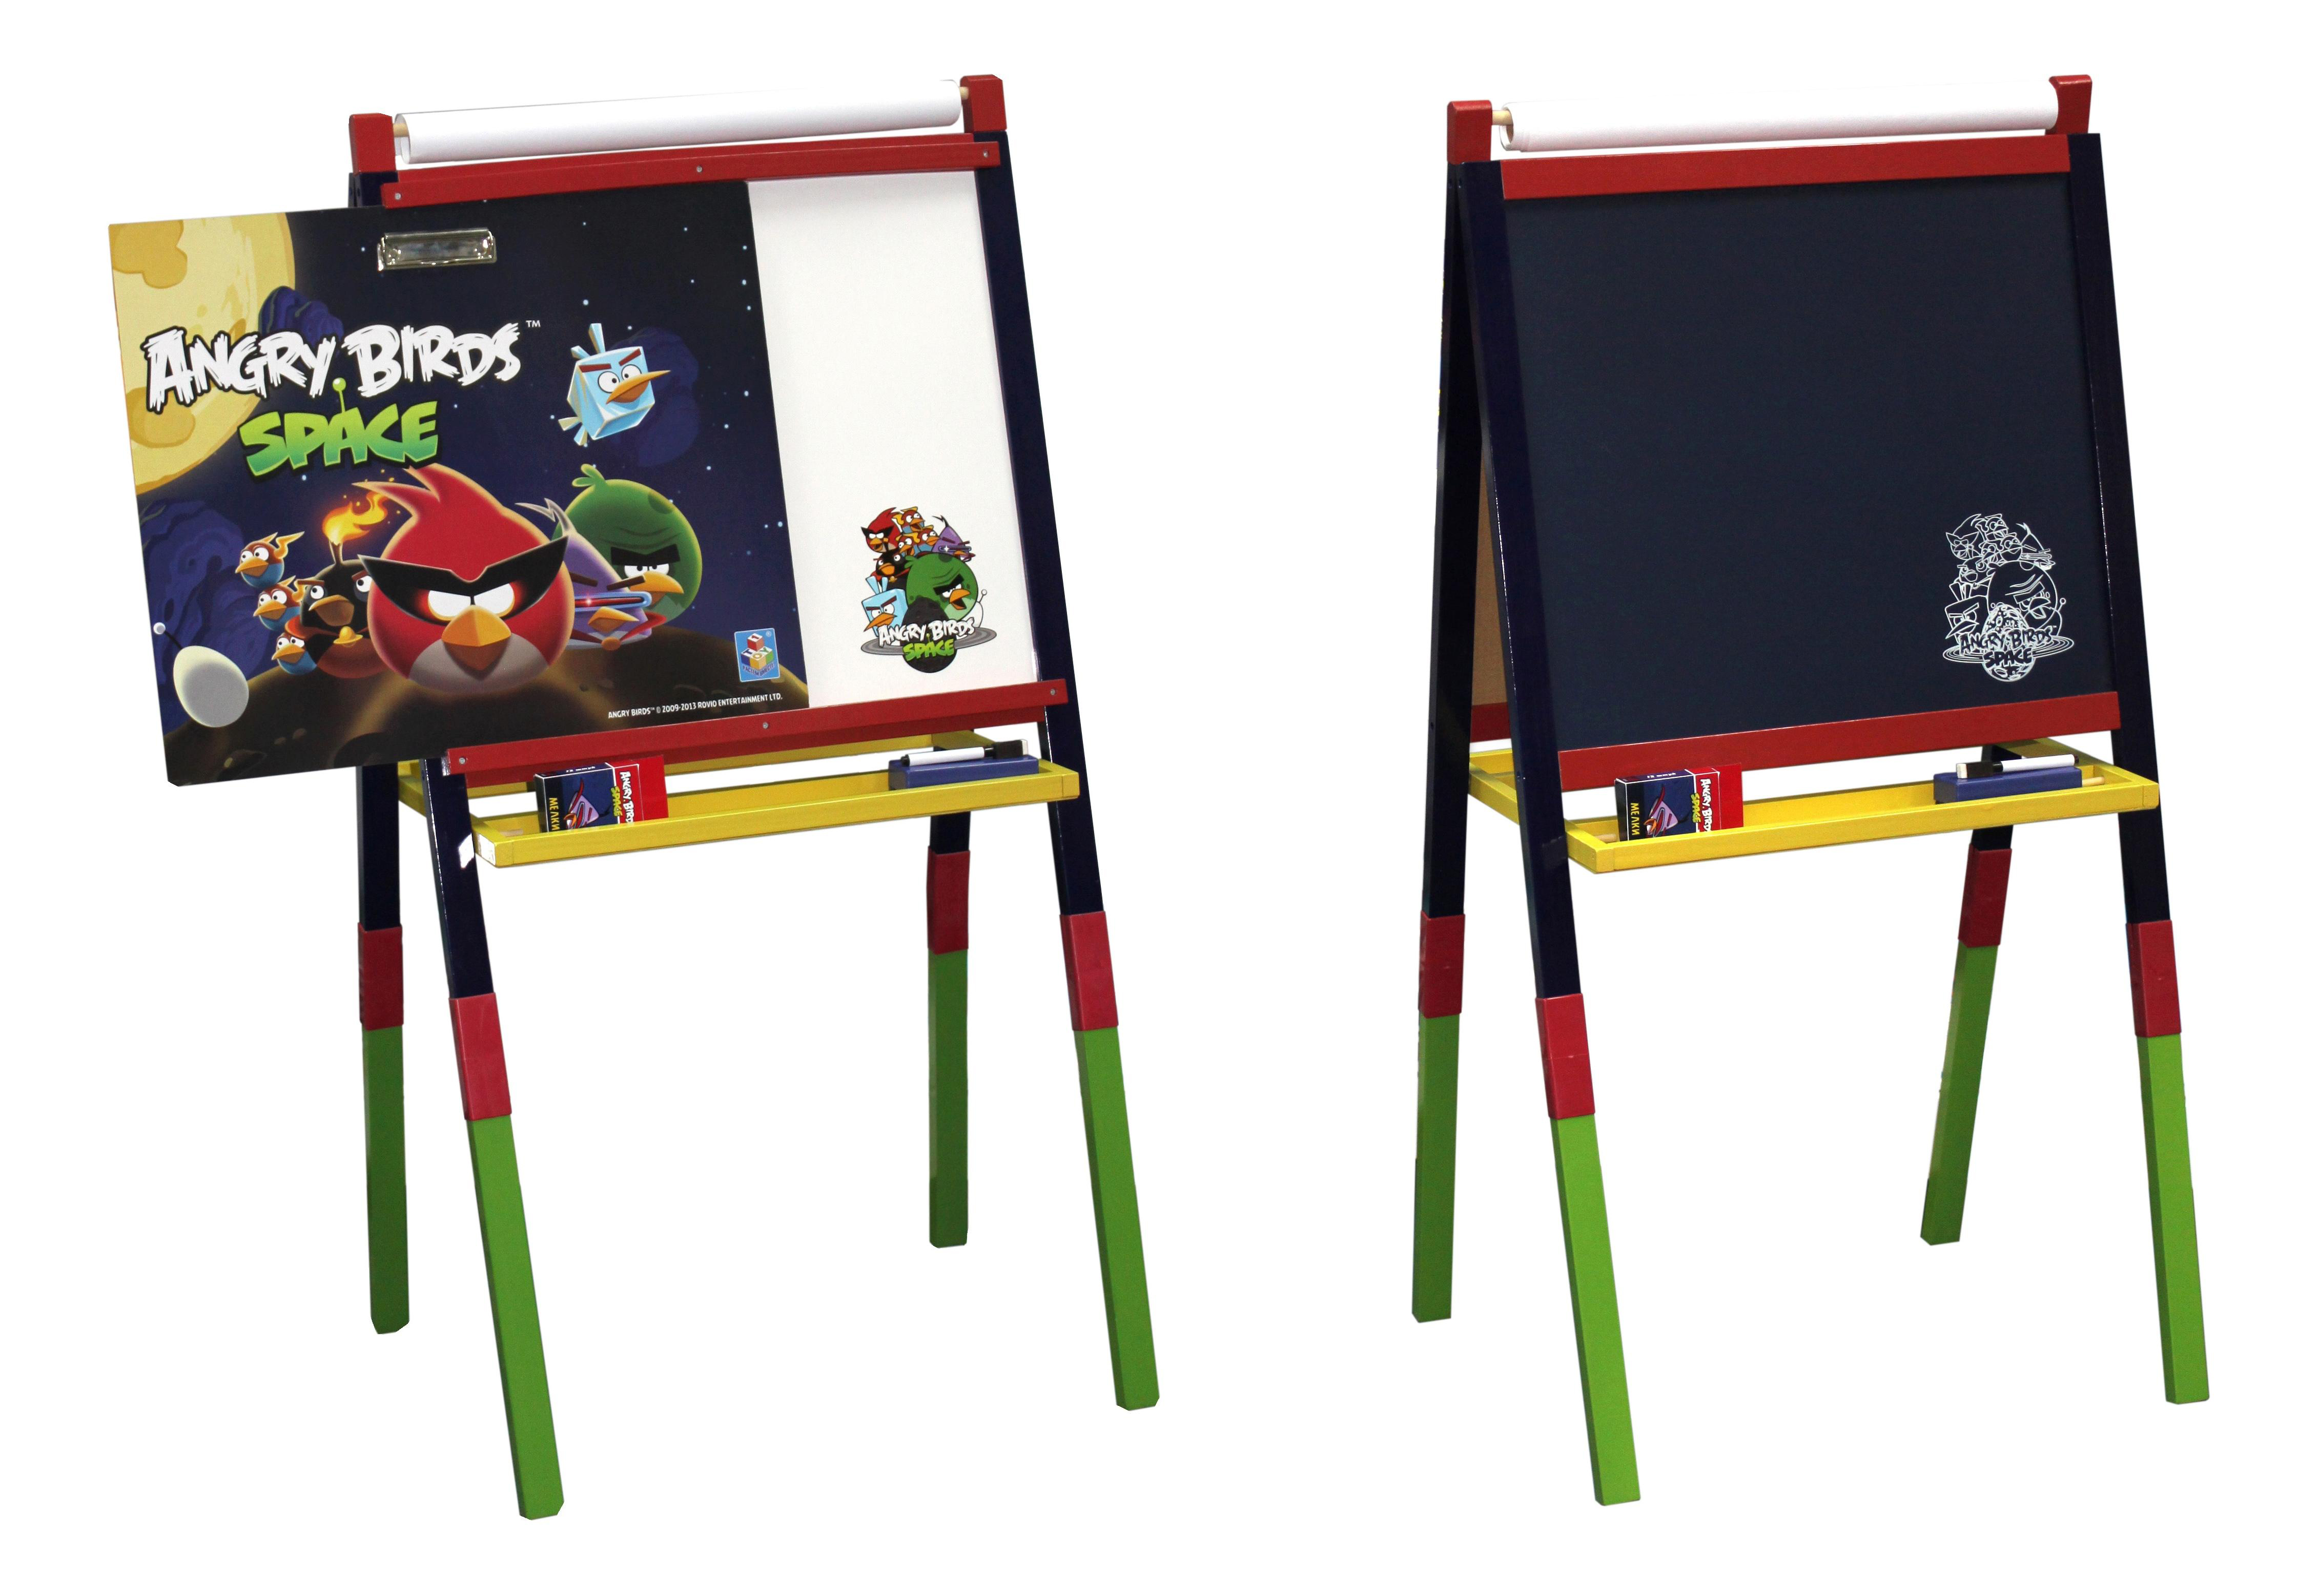 фото Angry birds space набор для рисования 113х4х58 1 toy